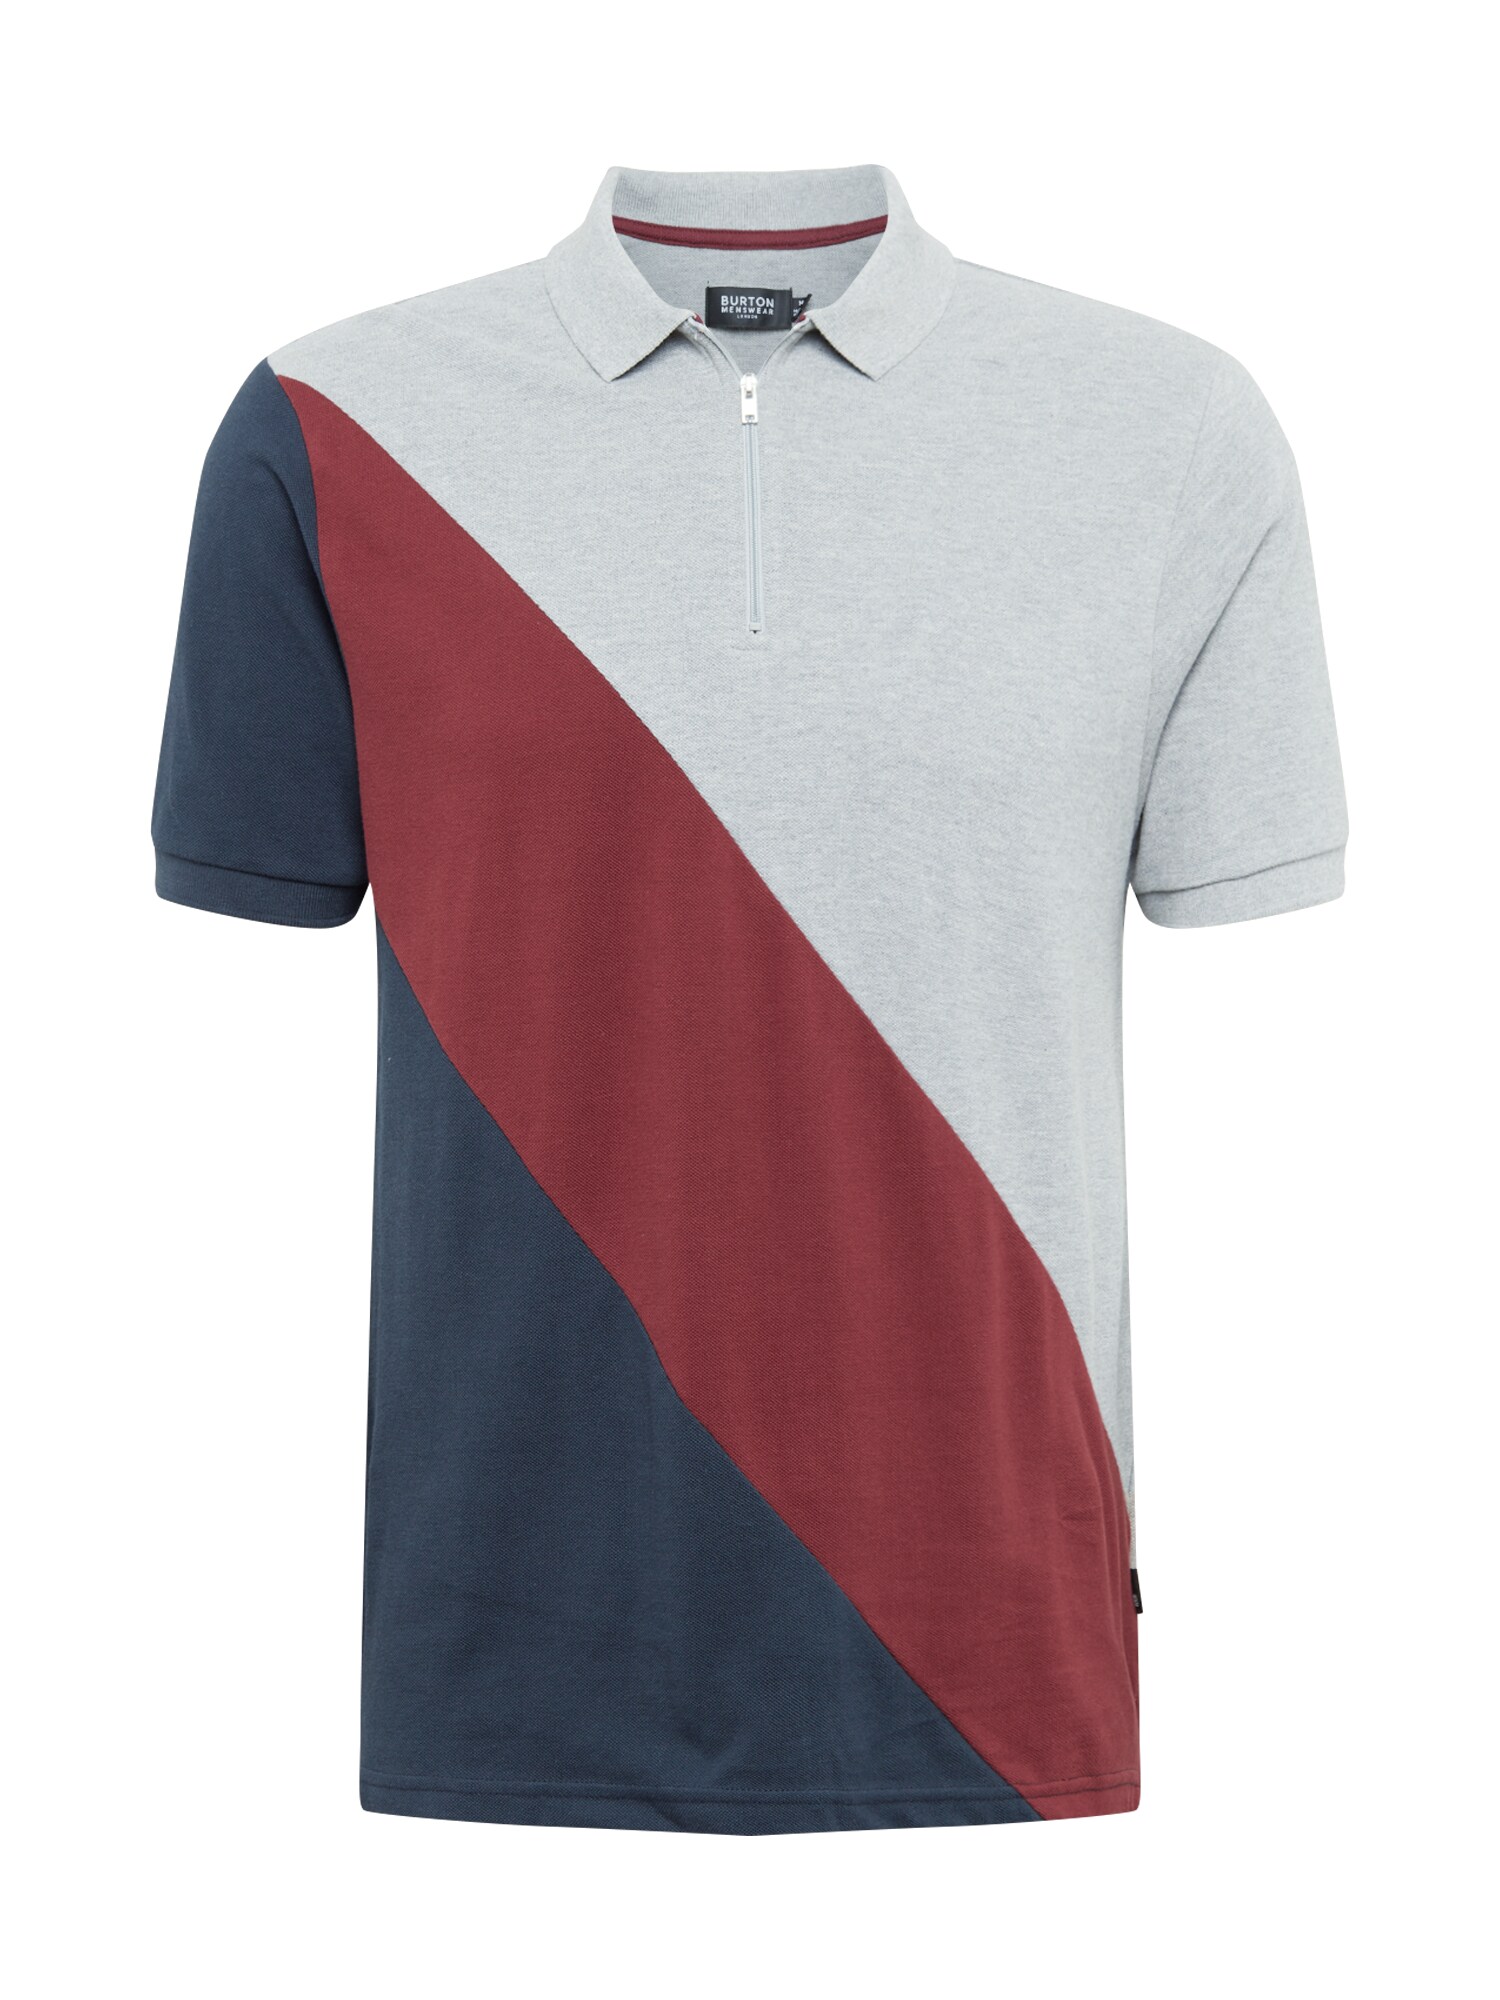 BURTON MENSWEAR LONDON Marškinėliai  pilka / tamsiai mėlyna / raudona